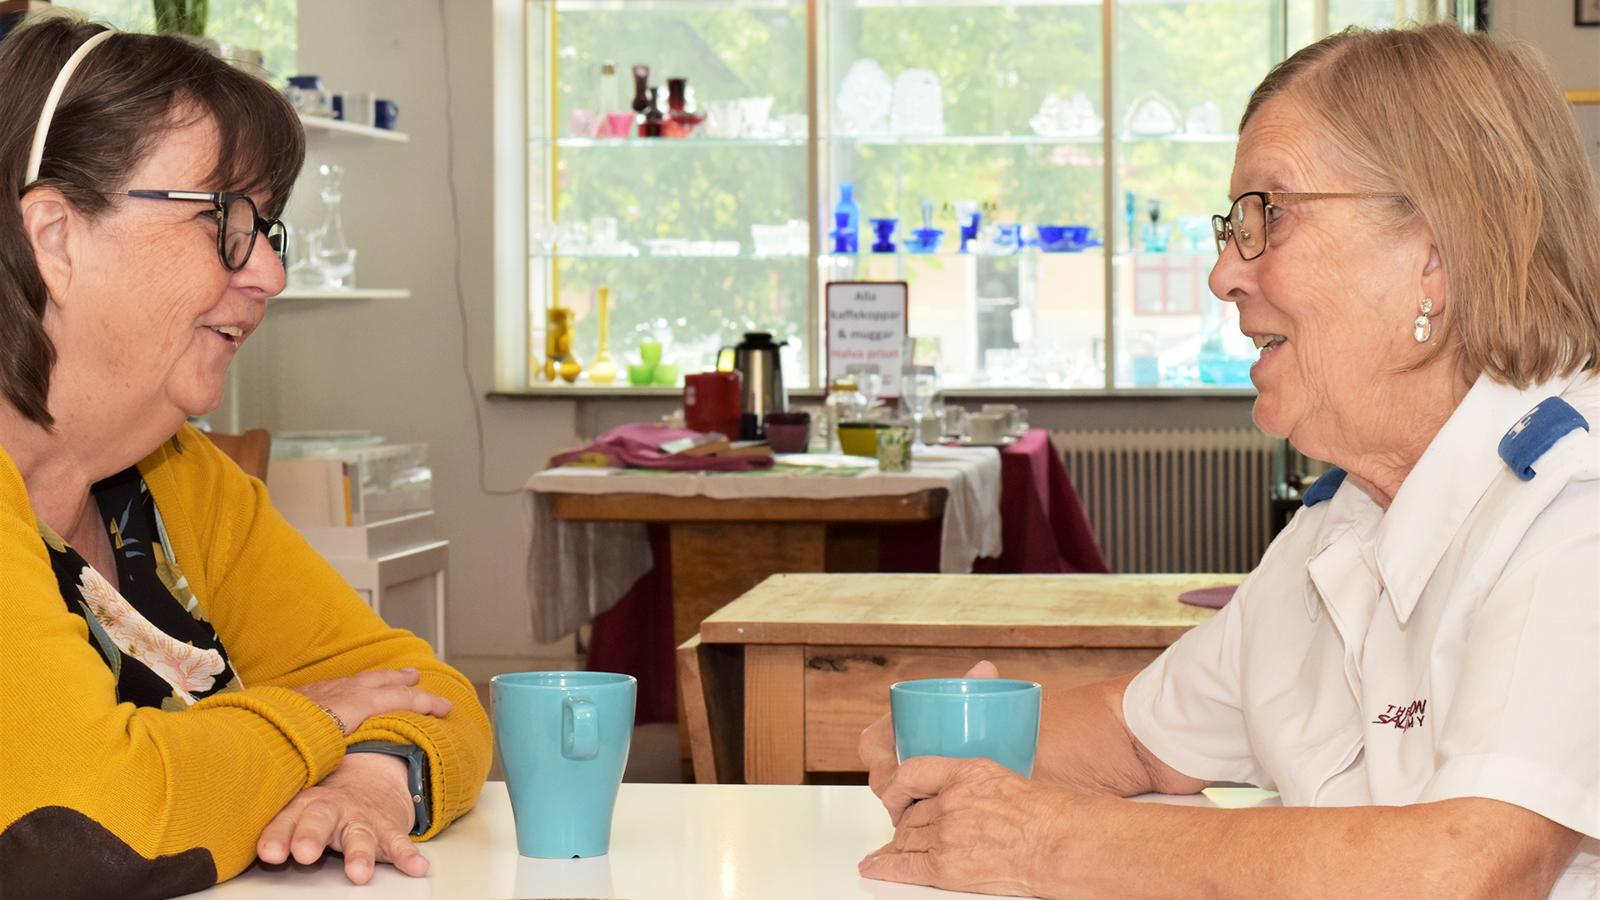 Elisabeth och Solveig sitter mitt emot varandra och samtalar vid ett kafébord med kaffekoppar i händerna.